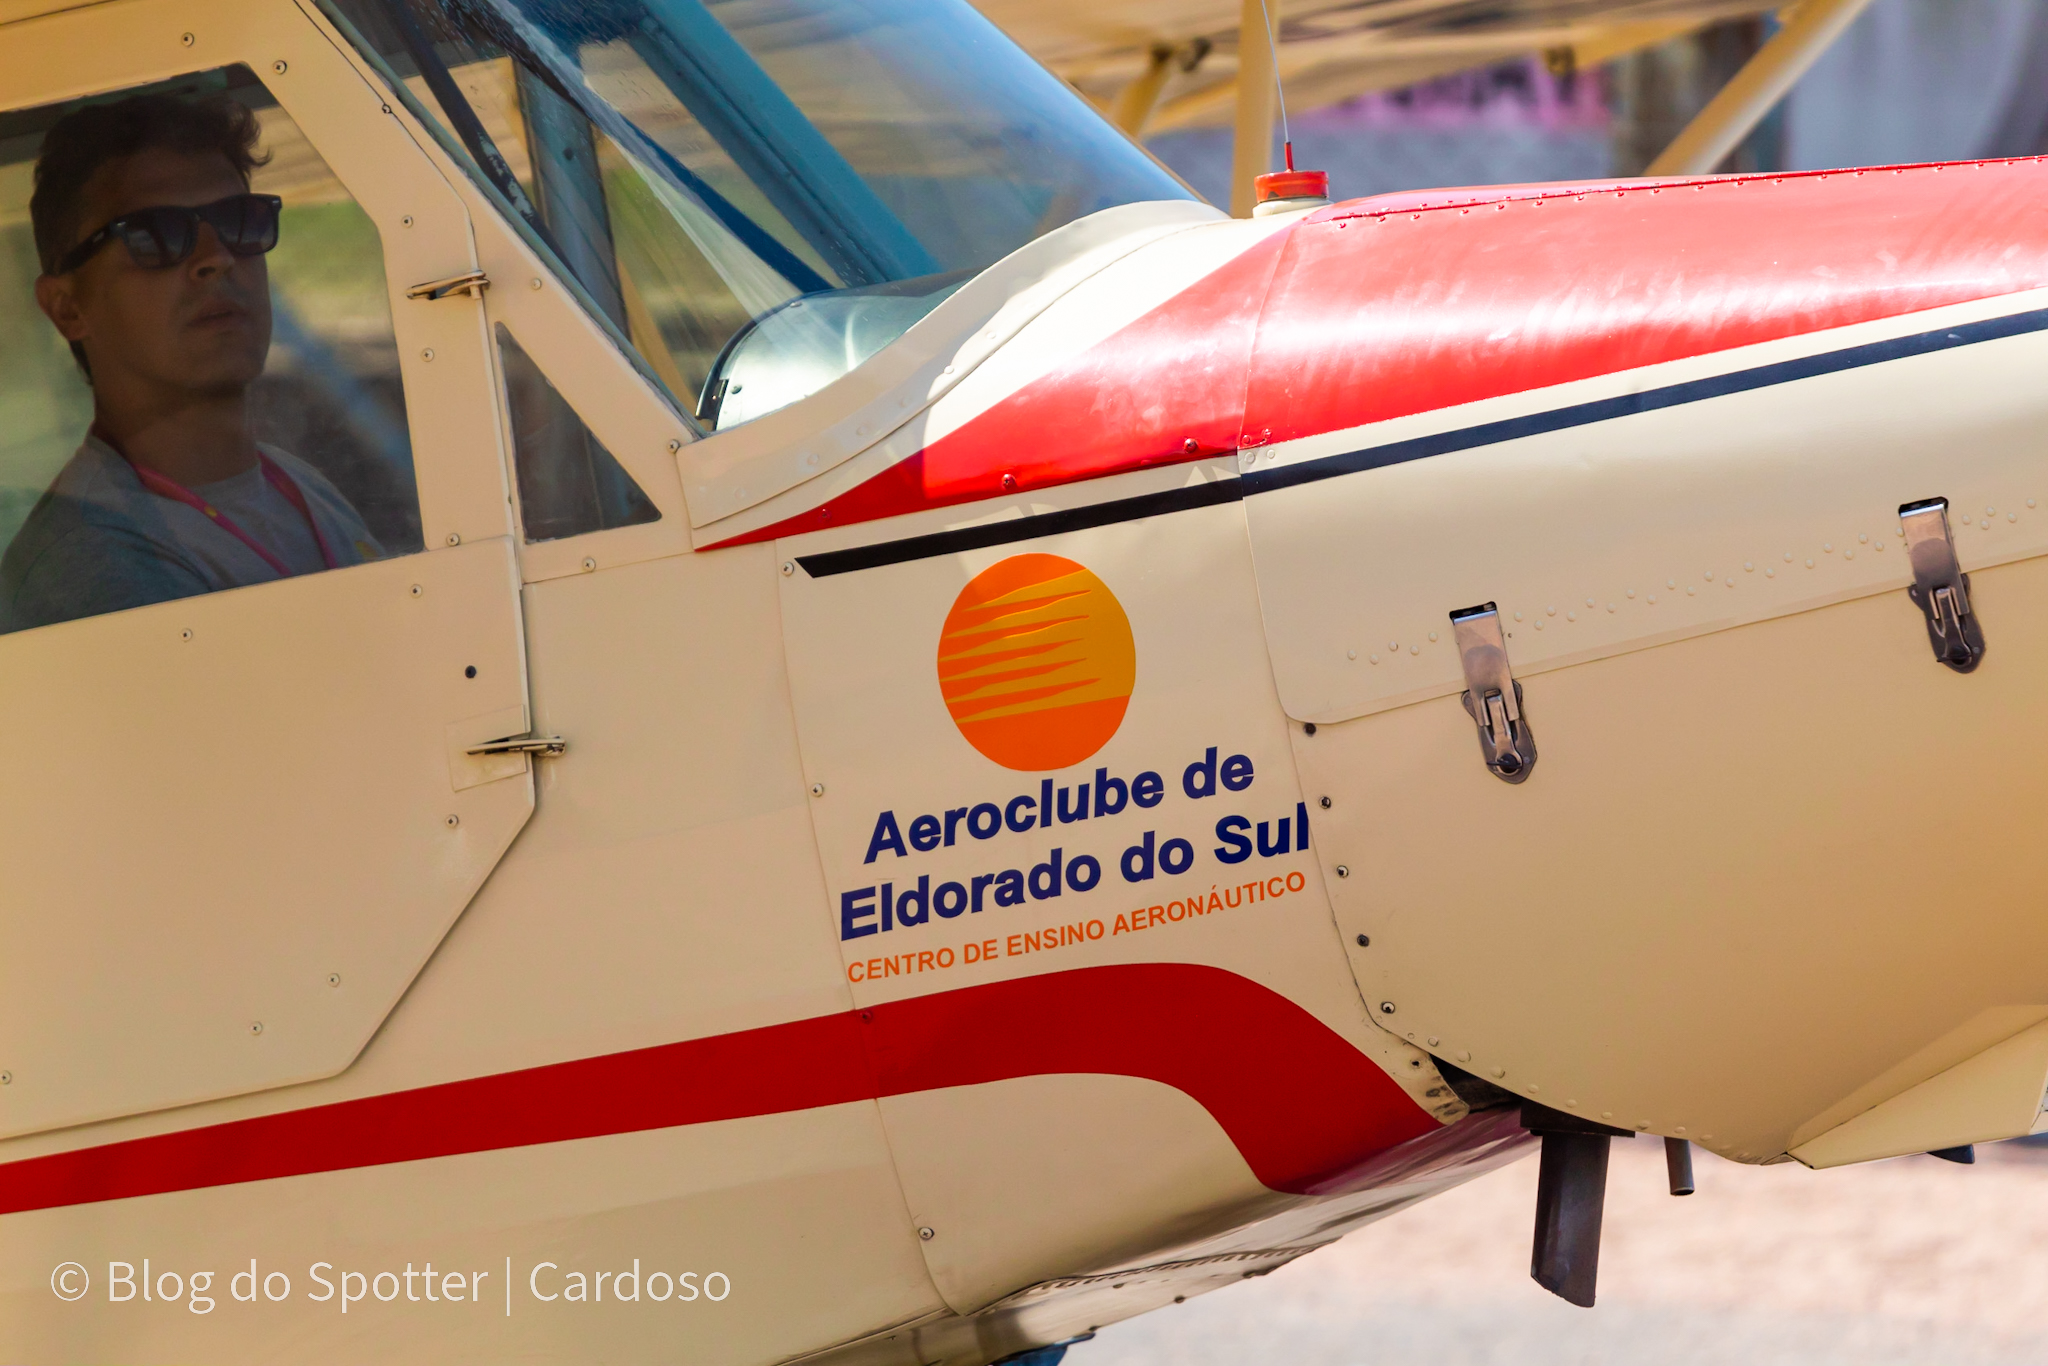 PP-GST - Paulistinha - Aeroclube de Eldorado do Sul